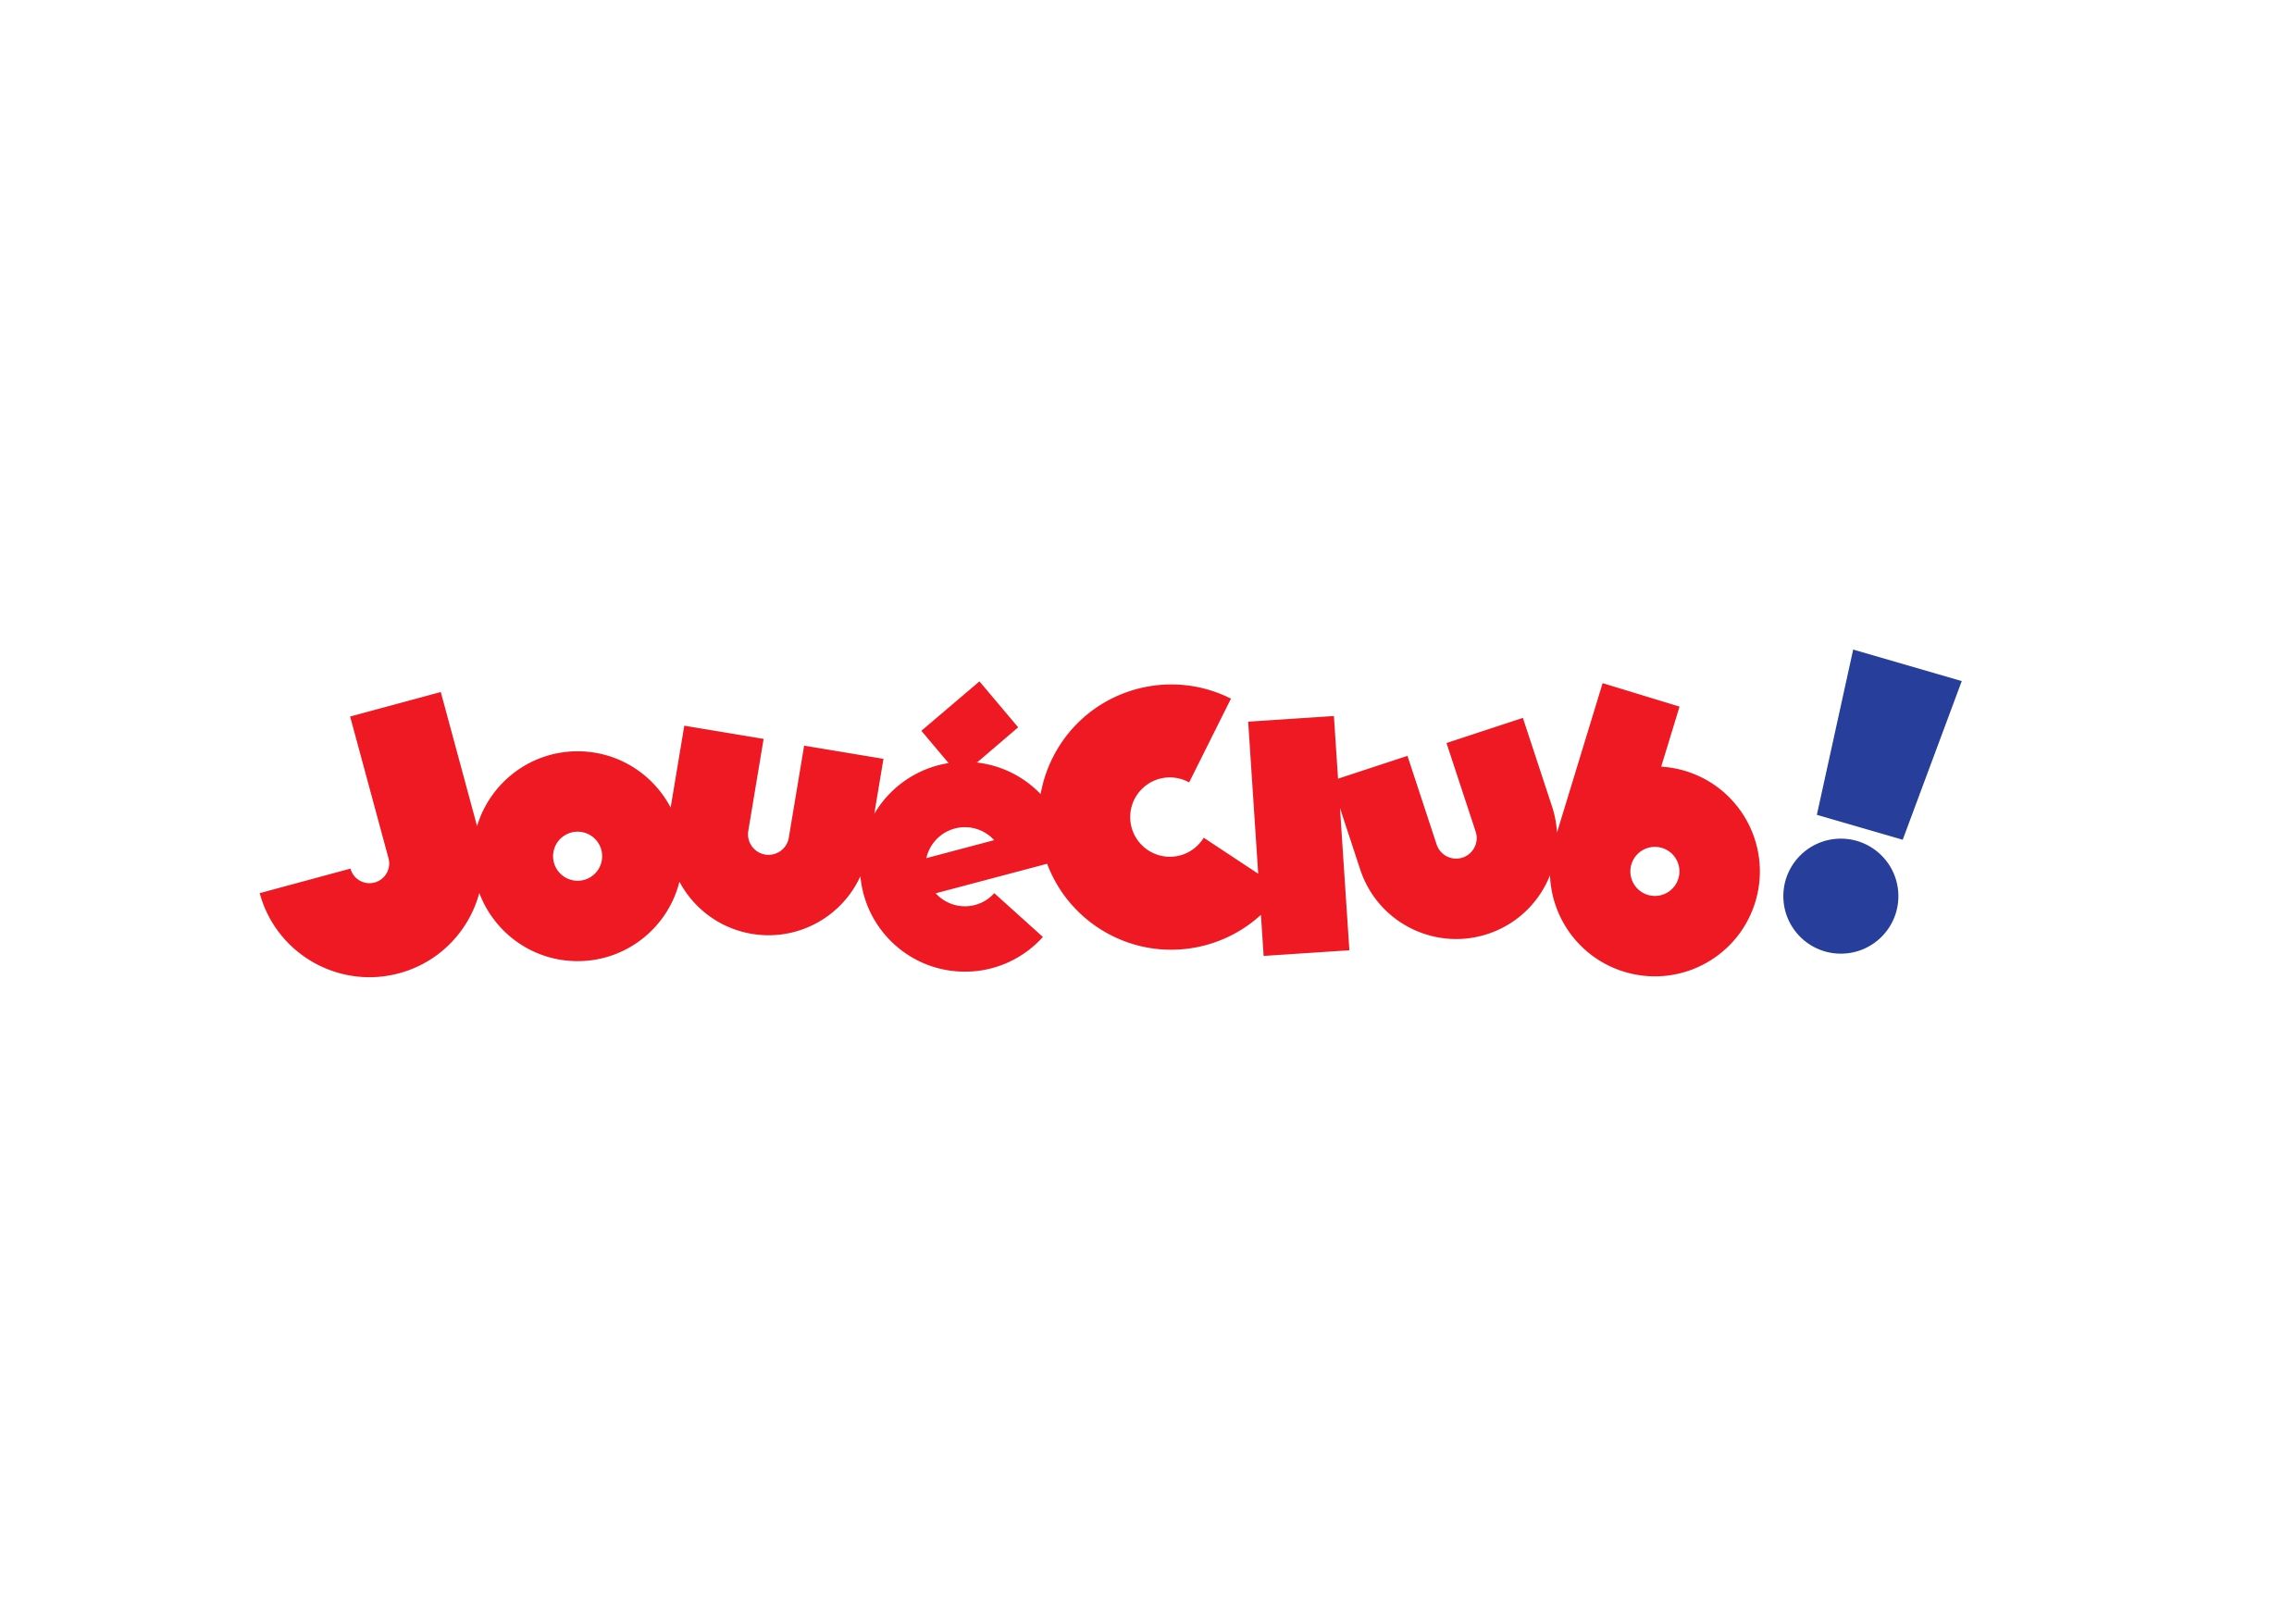 Logo Joué Club